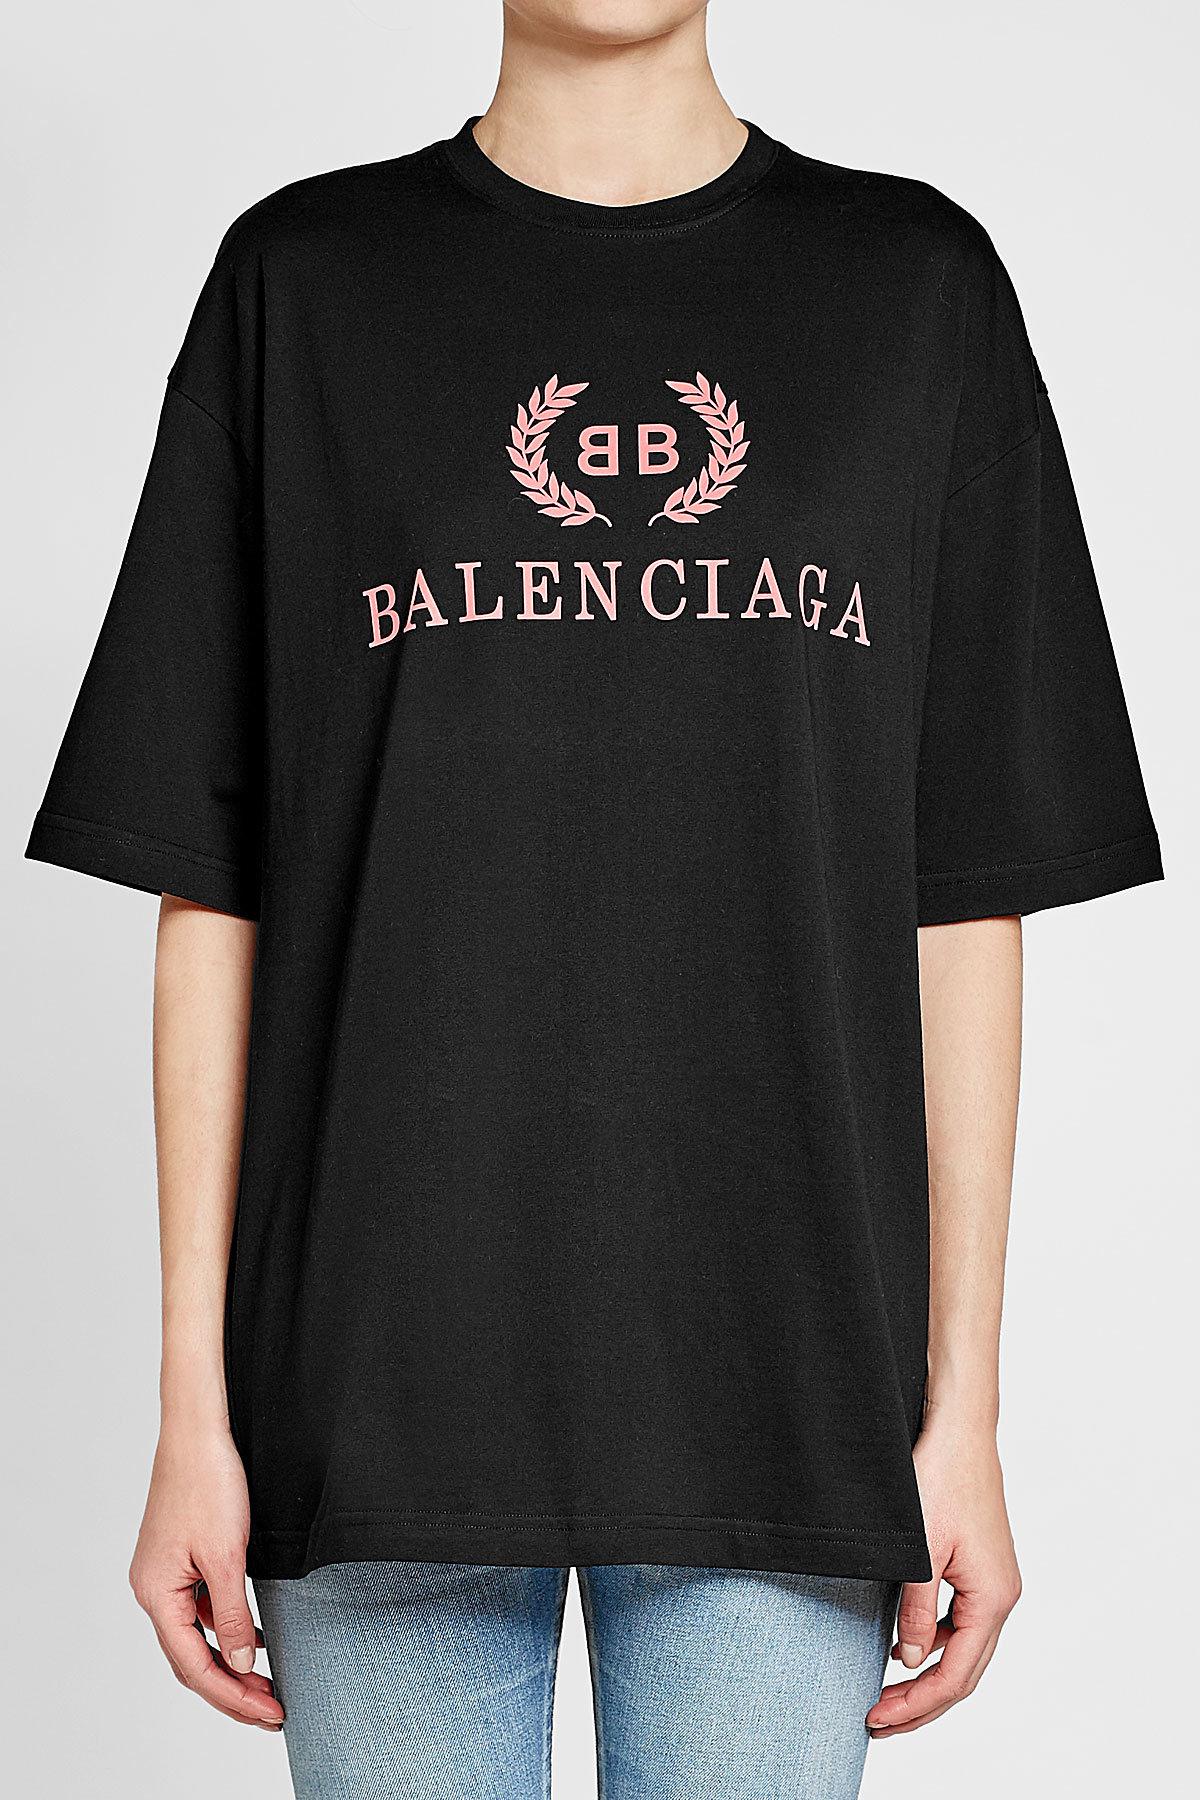 Balenciaga Shirt Svg